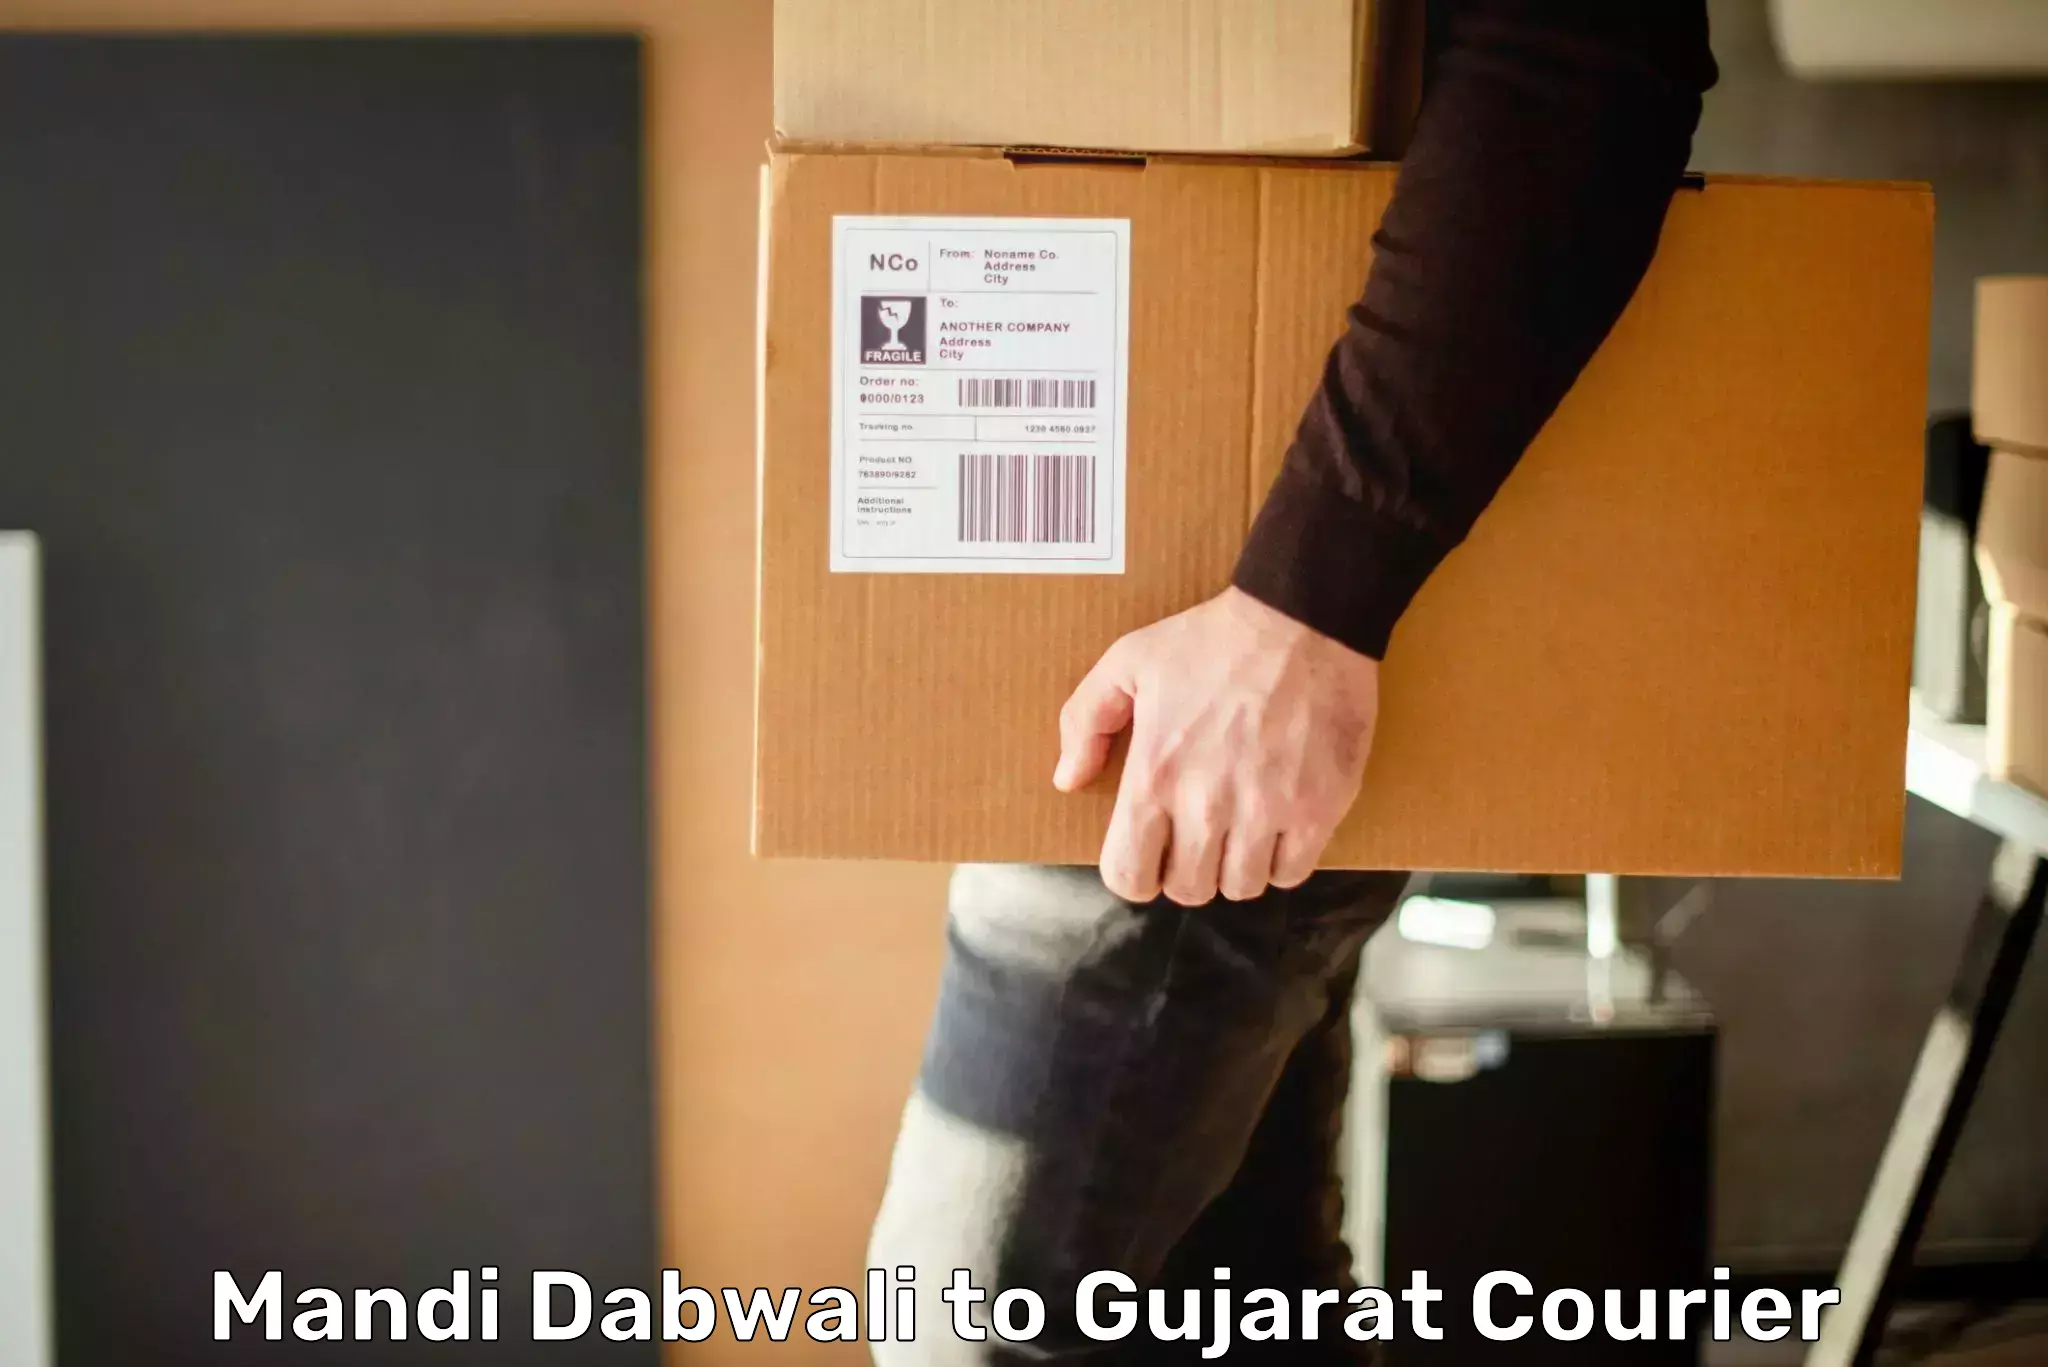 Next-day freight services Mandi Dabwali to Dahej